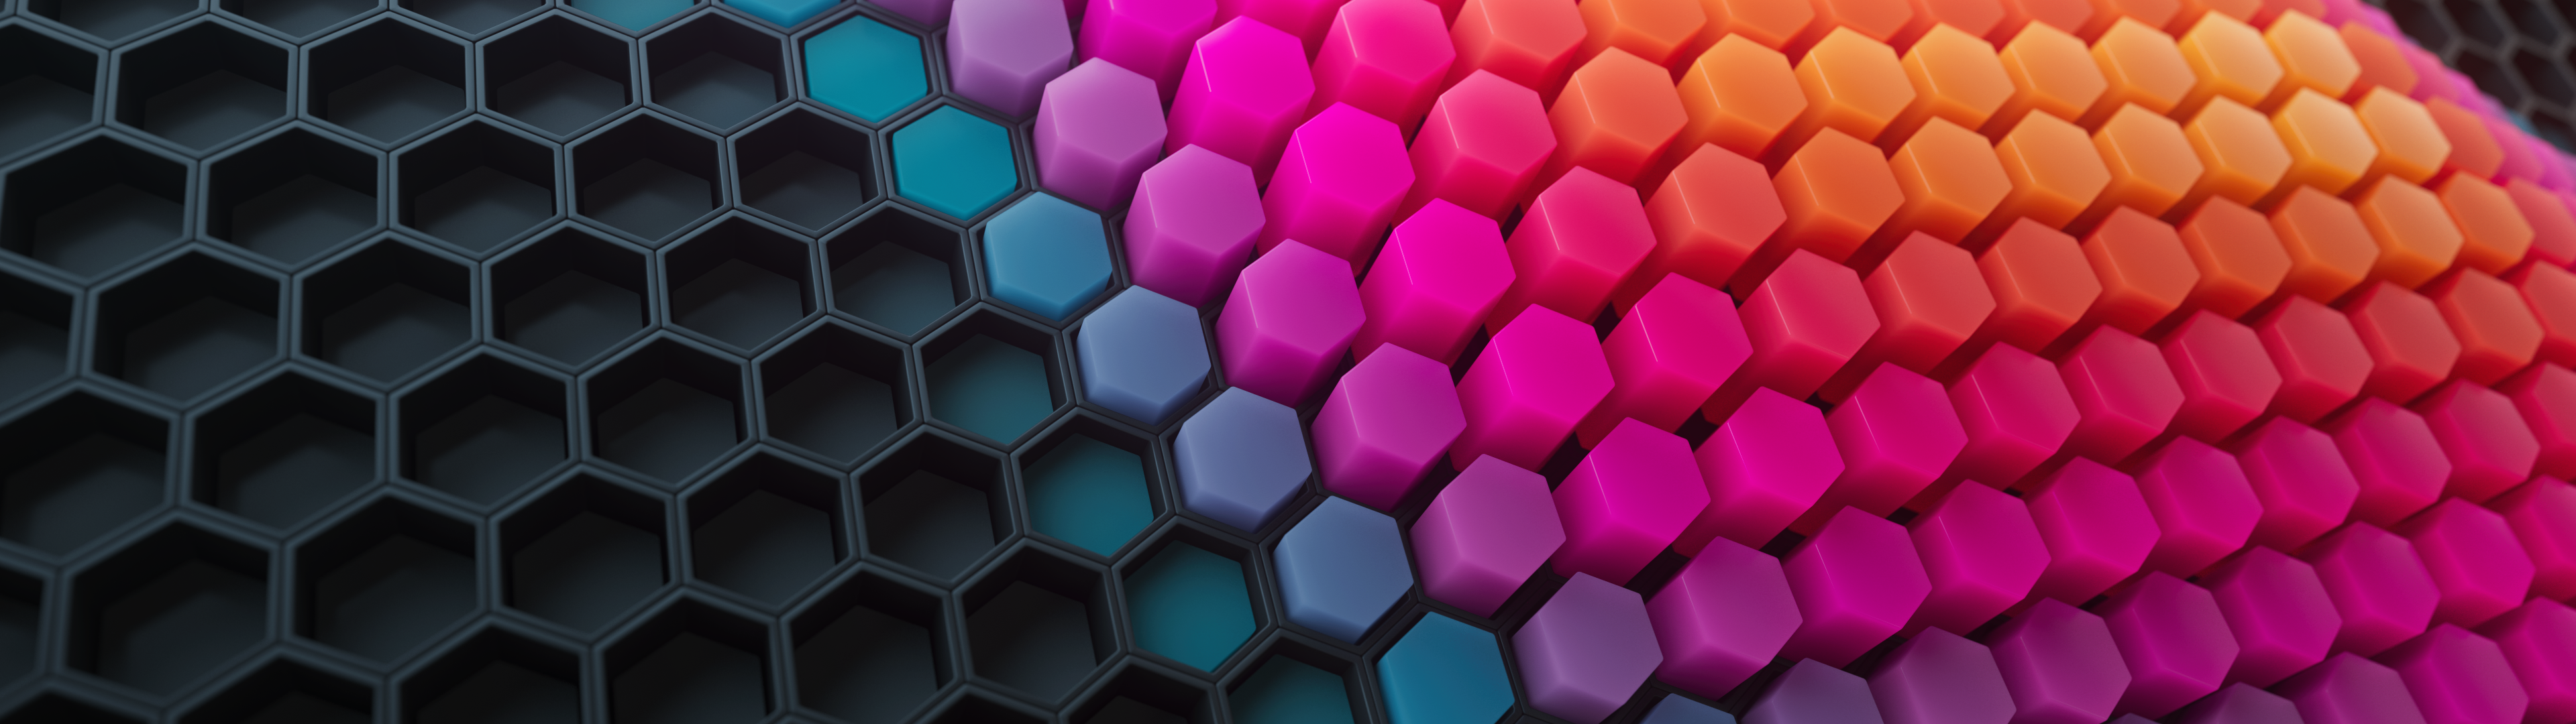 Hexagons Wallpaper 4K, Patterns, Abstract, #2286